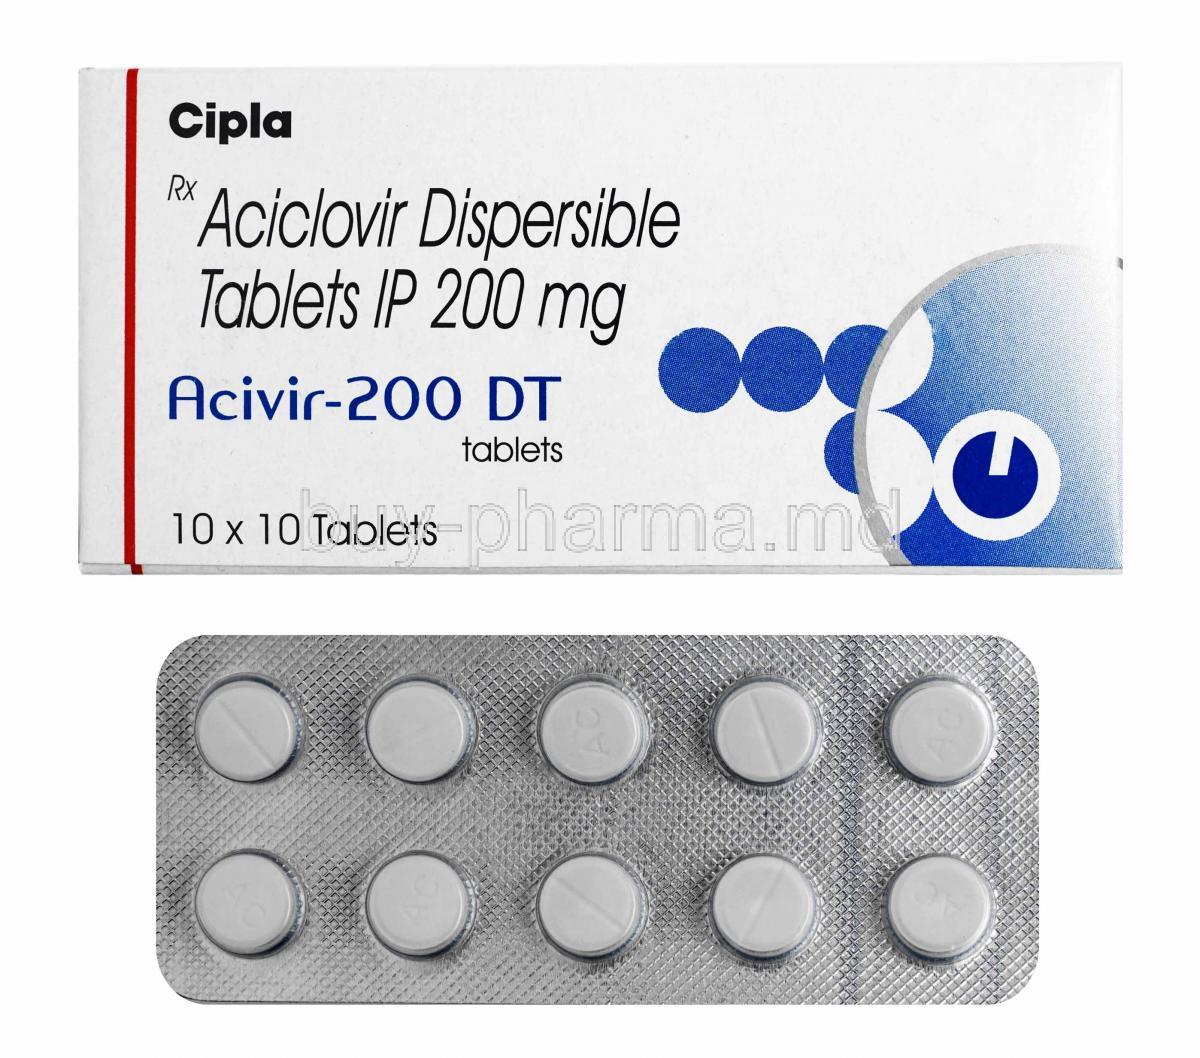 Acivir, Acyclovir 200mg box and tablets